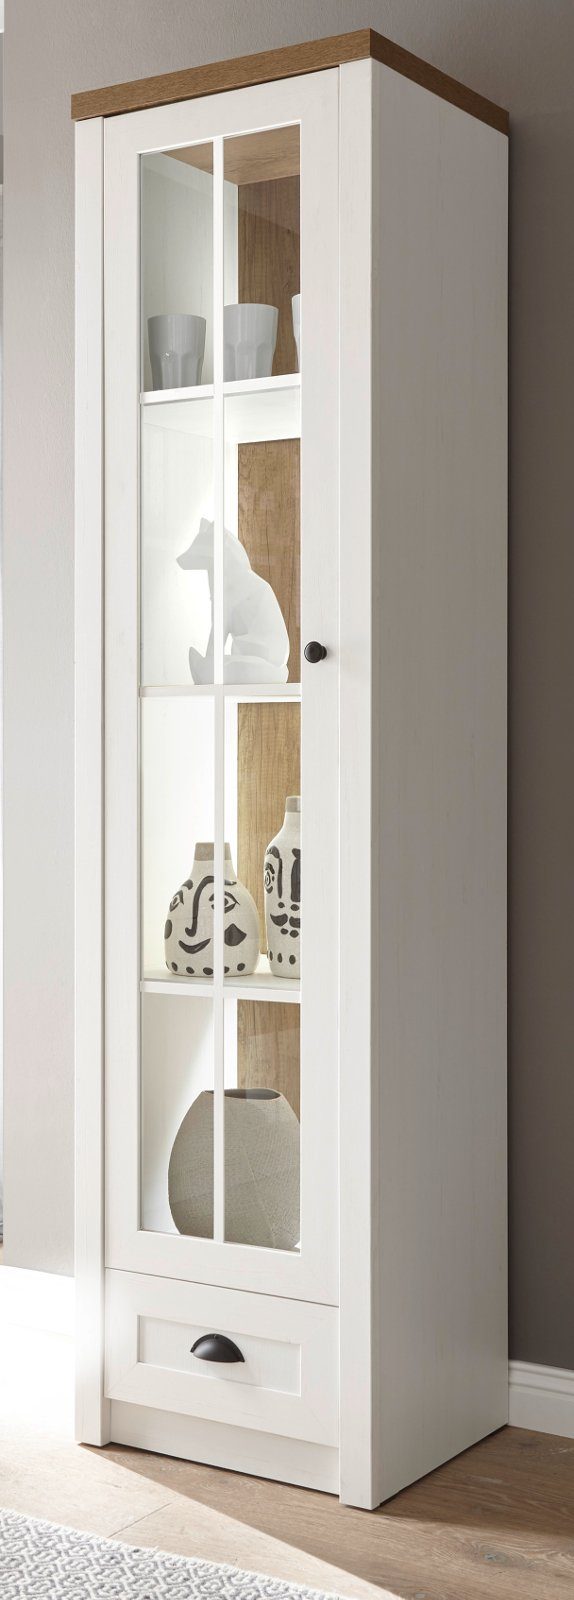 Furn.Design Stauraumvitrine Seyne (Vitrinenschrank in Pinie weiß und Eiche,  50 x 198 cm) Moderner Landhausstil, Türanschlag wechselbar | Vitrinenschränke